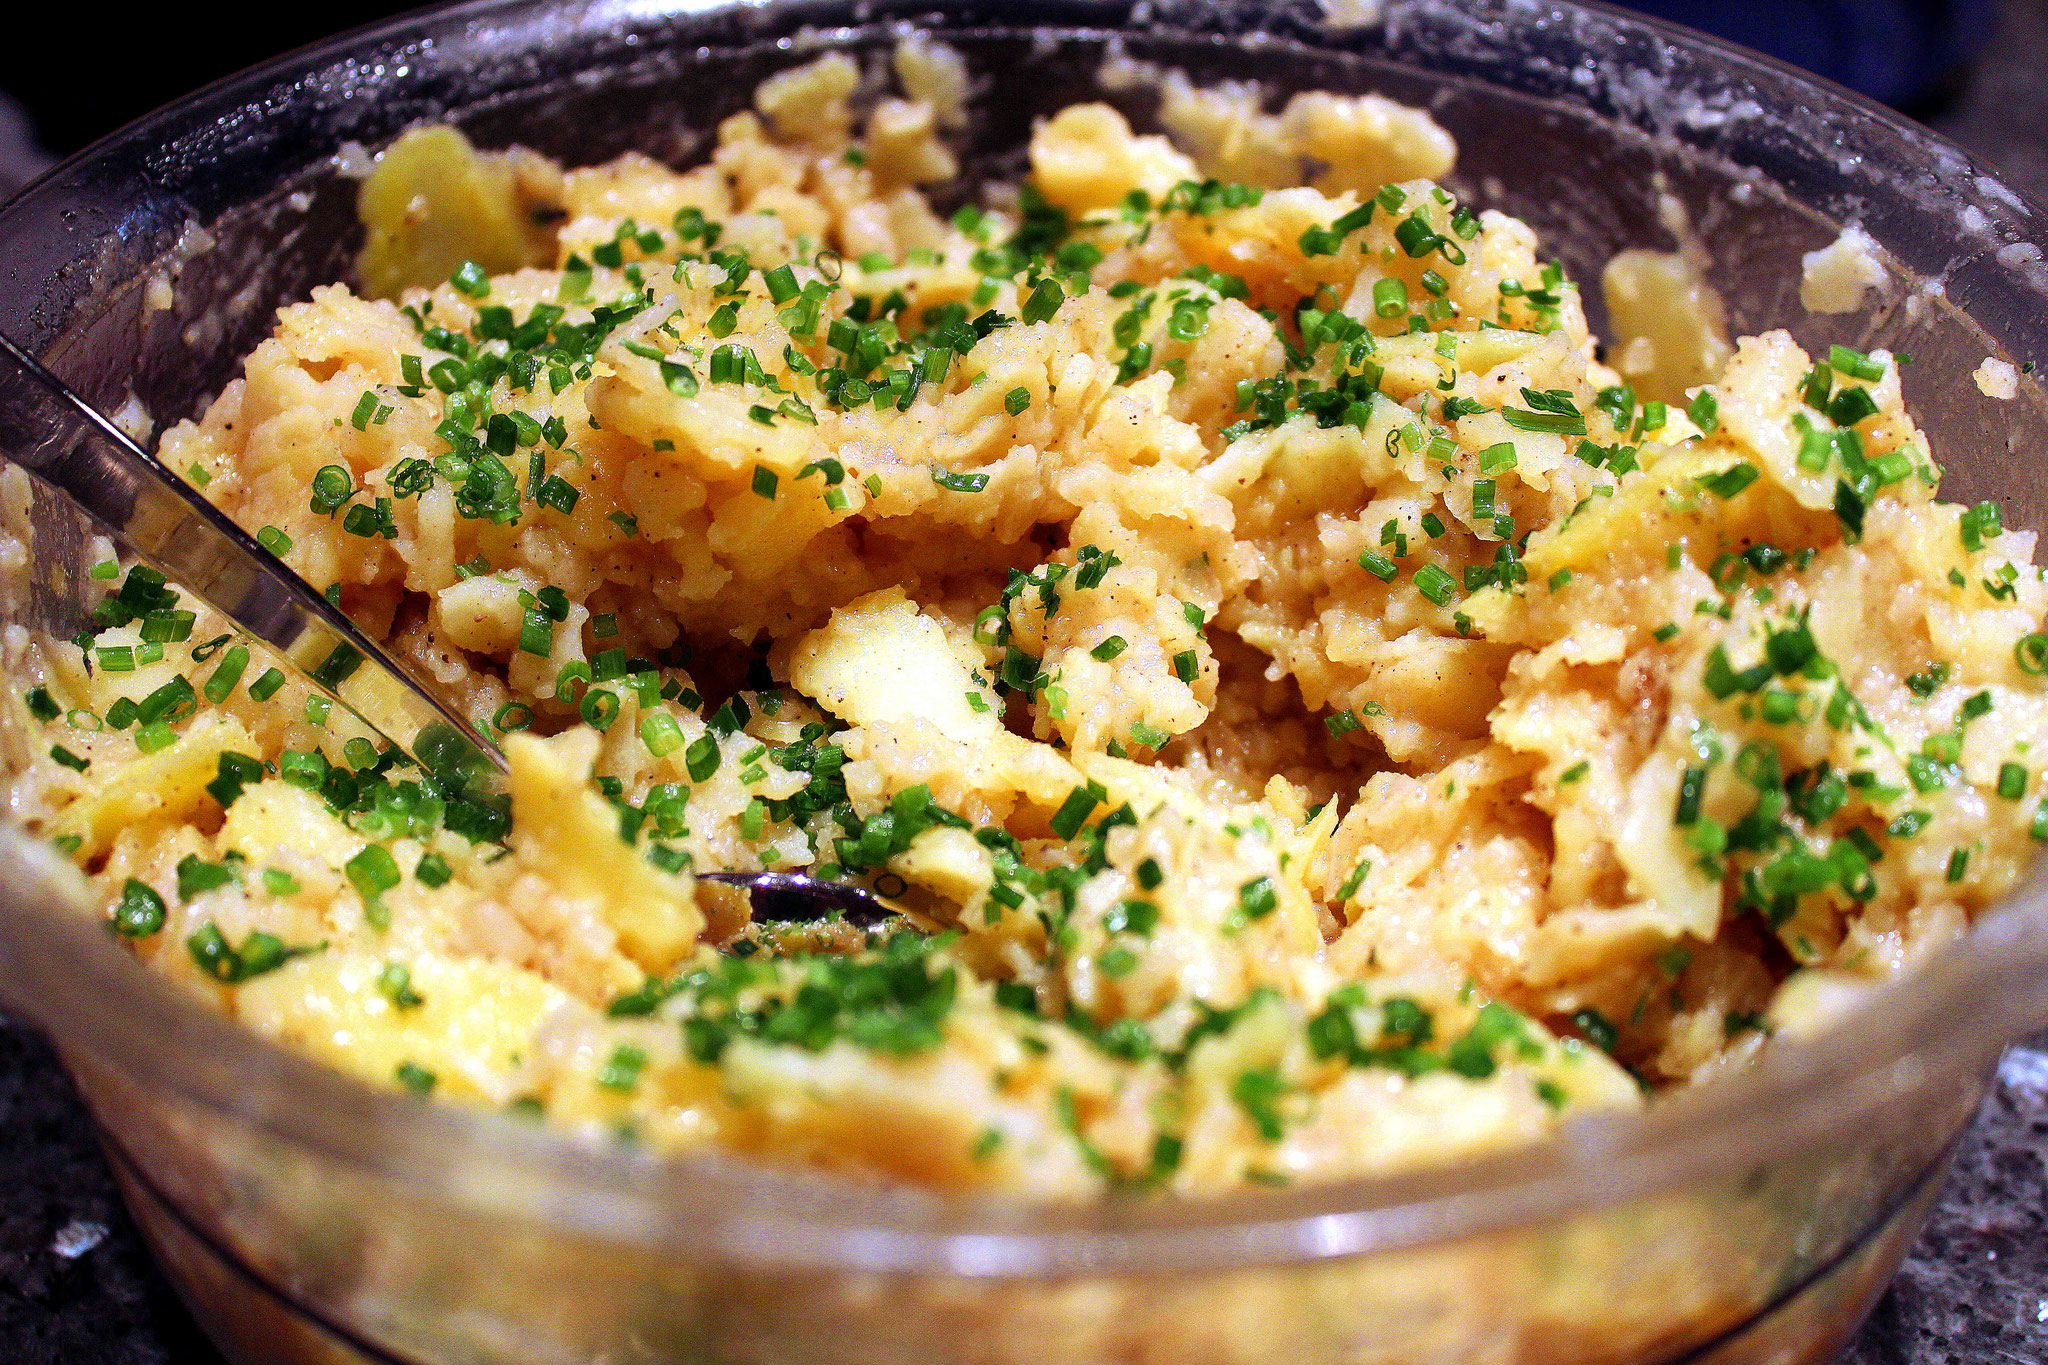 Fleischküchle mit Kartoffelsalat - Kronenfeinkost-Shop